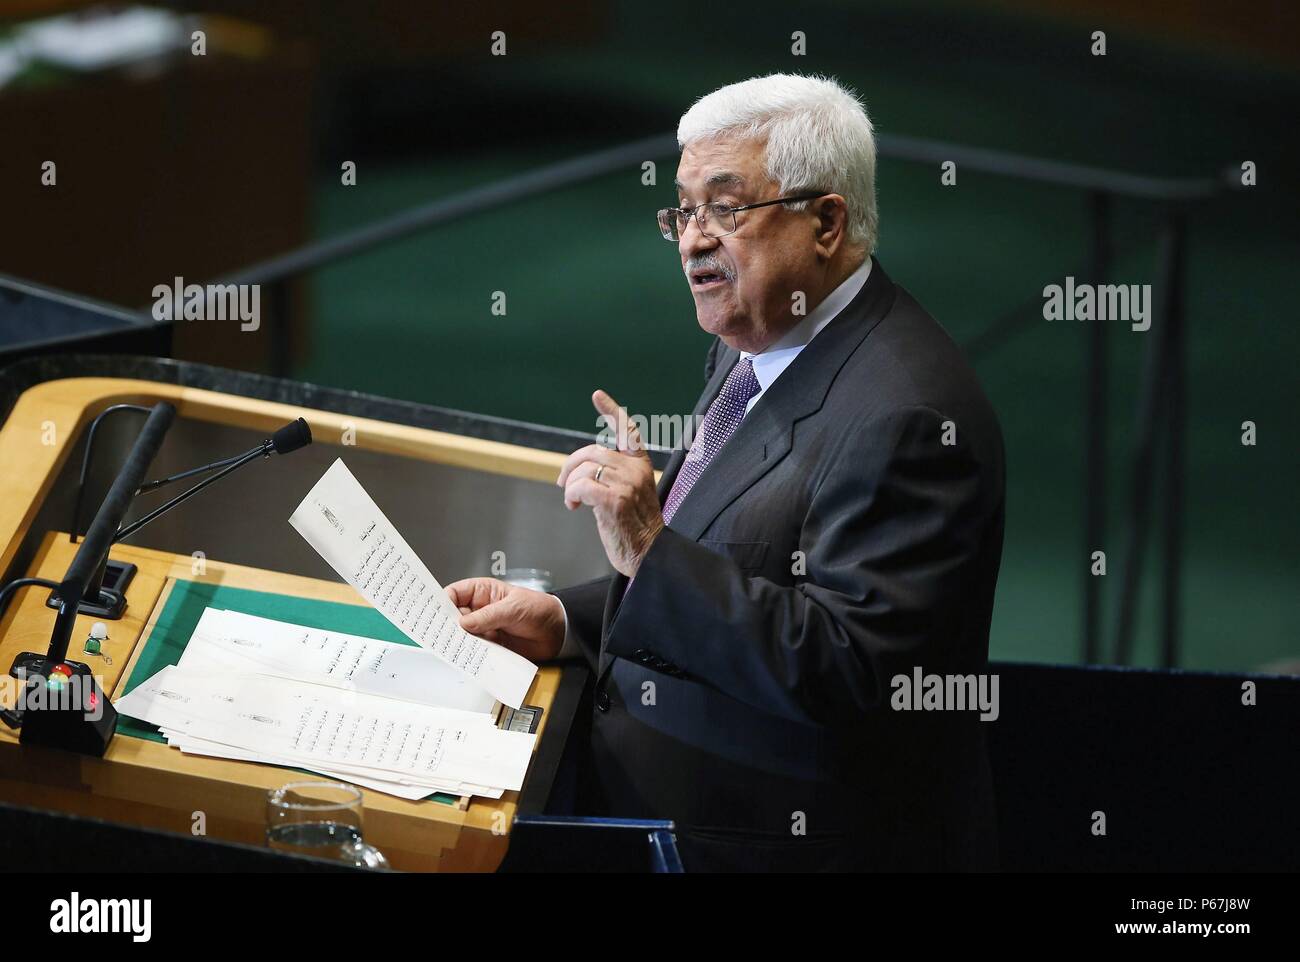 Mahmoud Abbas all Assemblea Generale delle Nazioni Unite2012. Mahmoud Abbas nato il 26 marzo 1935 è un palestinese più. Egli è stato il Presidente dell'Organizzazione per la liberazione della Palestina (OLP) a partire dal 11 novembre 2004 ed è stato Presidente dello Stato di Palestina dal 15 gennaio 2005. Foto Stock